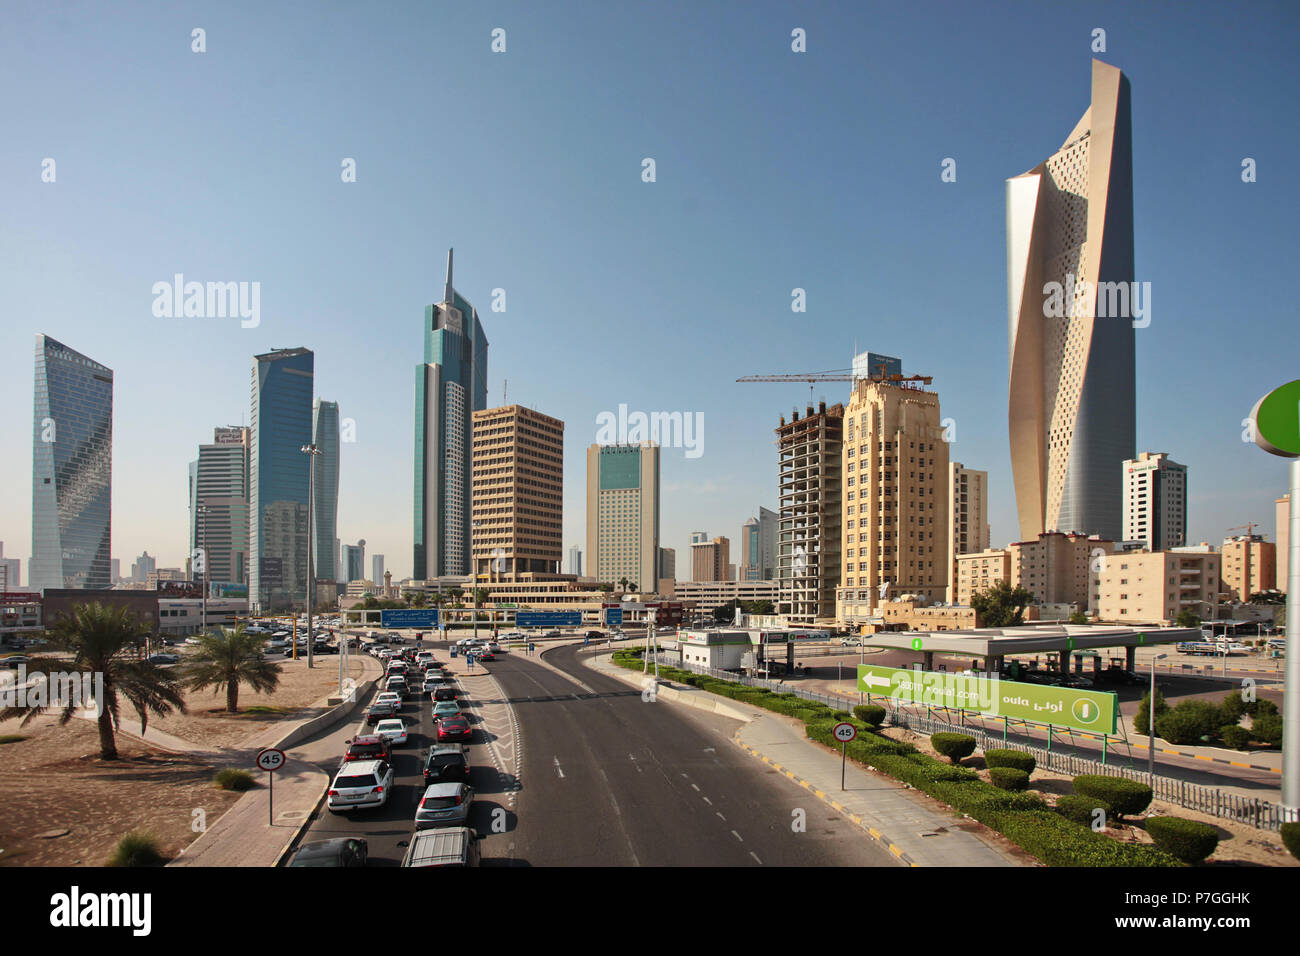 KUWAIT CITY, KUWAIT - November 12, 2013:  Skyline of Kuwait City, Middle East Stock Photo